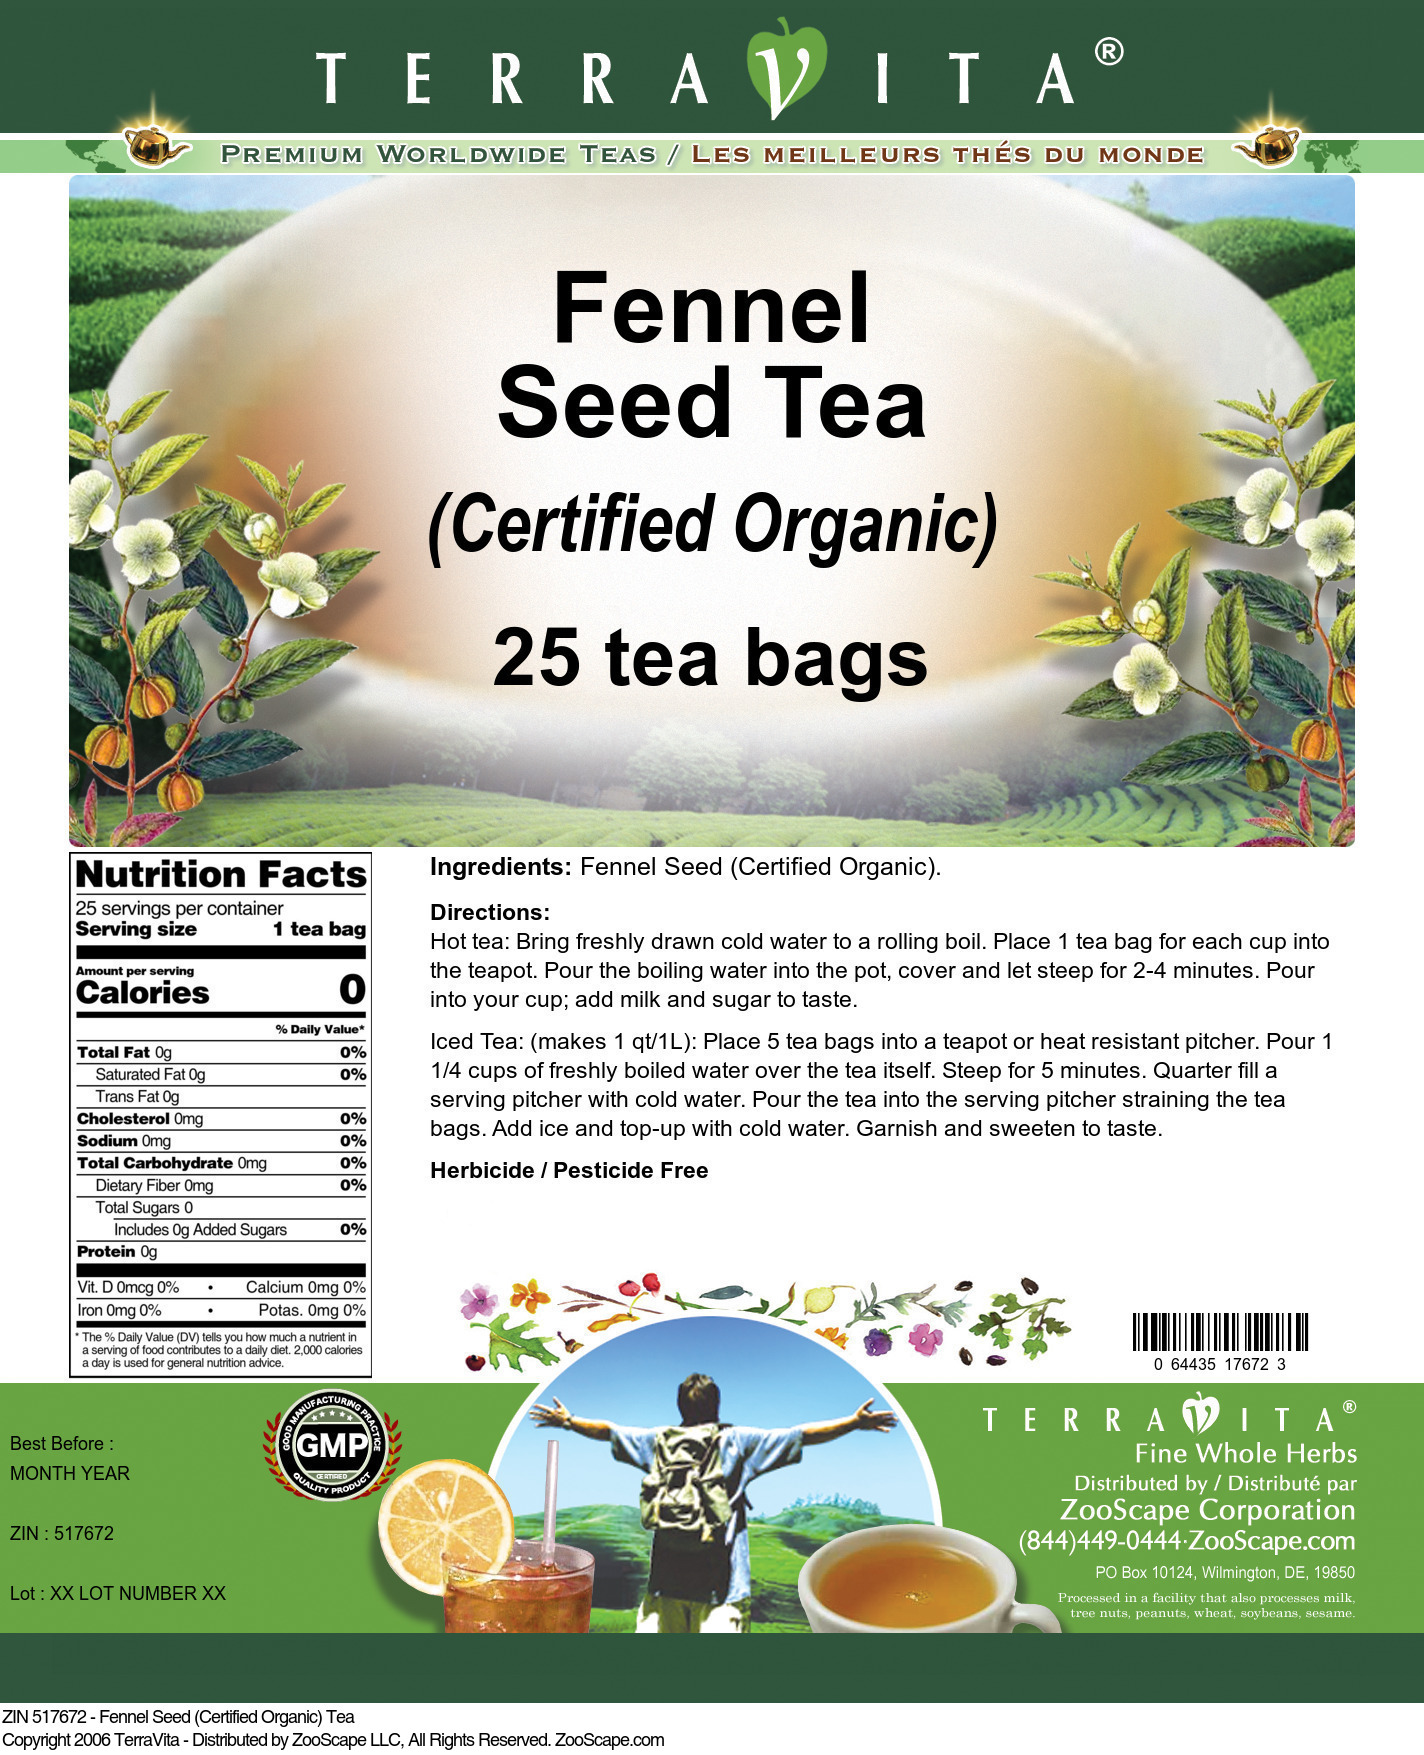 Fennel Seed (Certified Organic) Tea - Label